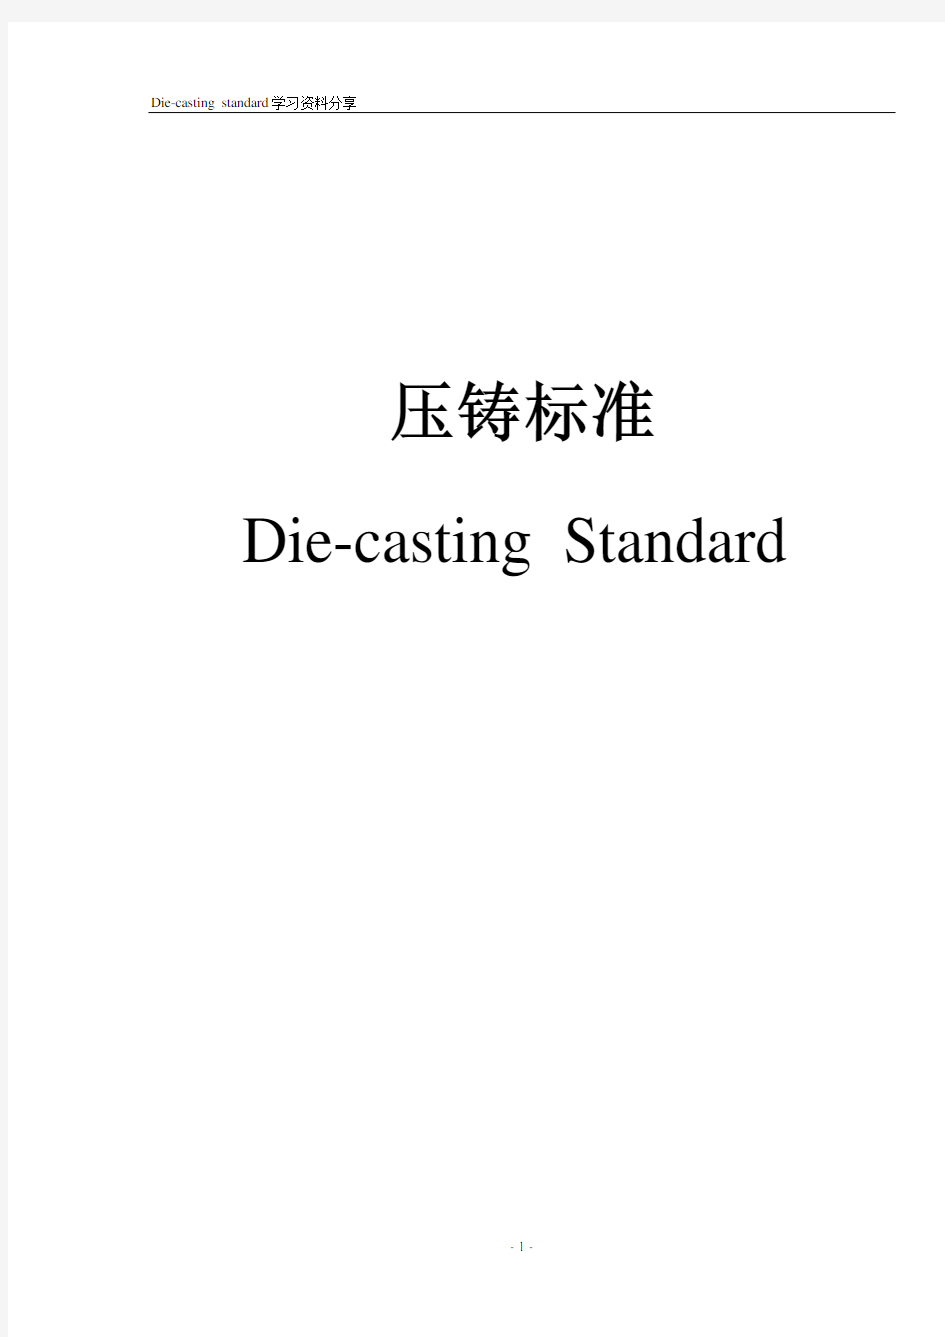 压铸模标准Die-casting Standard